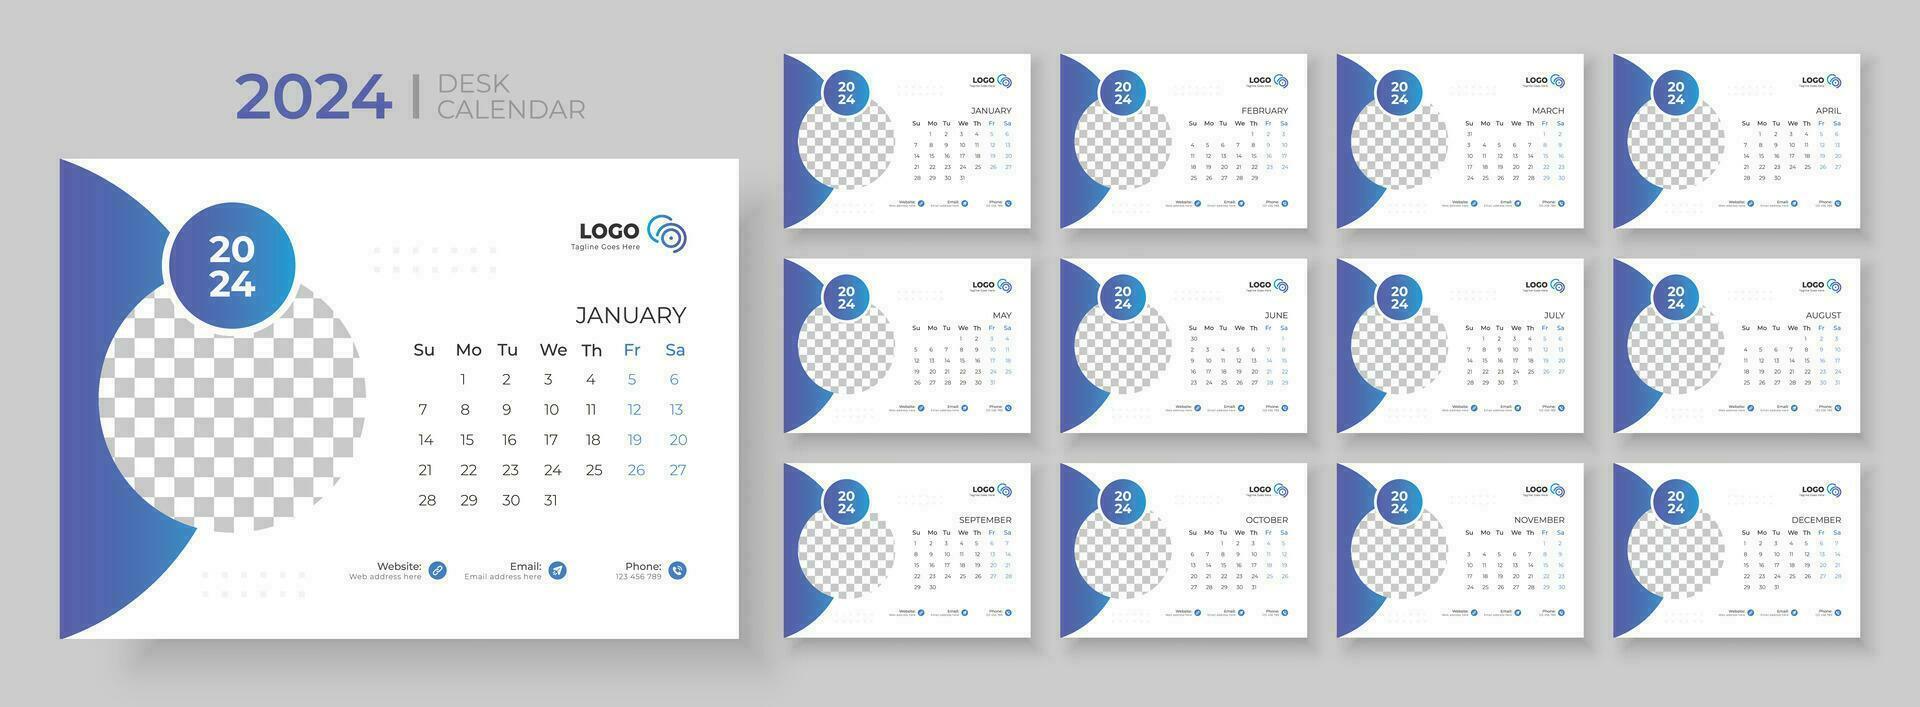 skrivbord kalender mall 2024. skrivbord kalender i en minimalistisk stil. vecka börjar på söndag. planerare för 2024 år. vektor